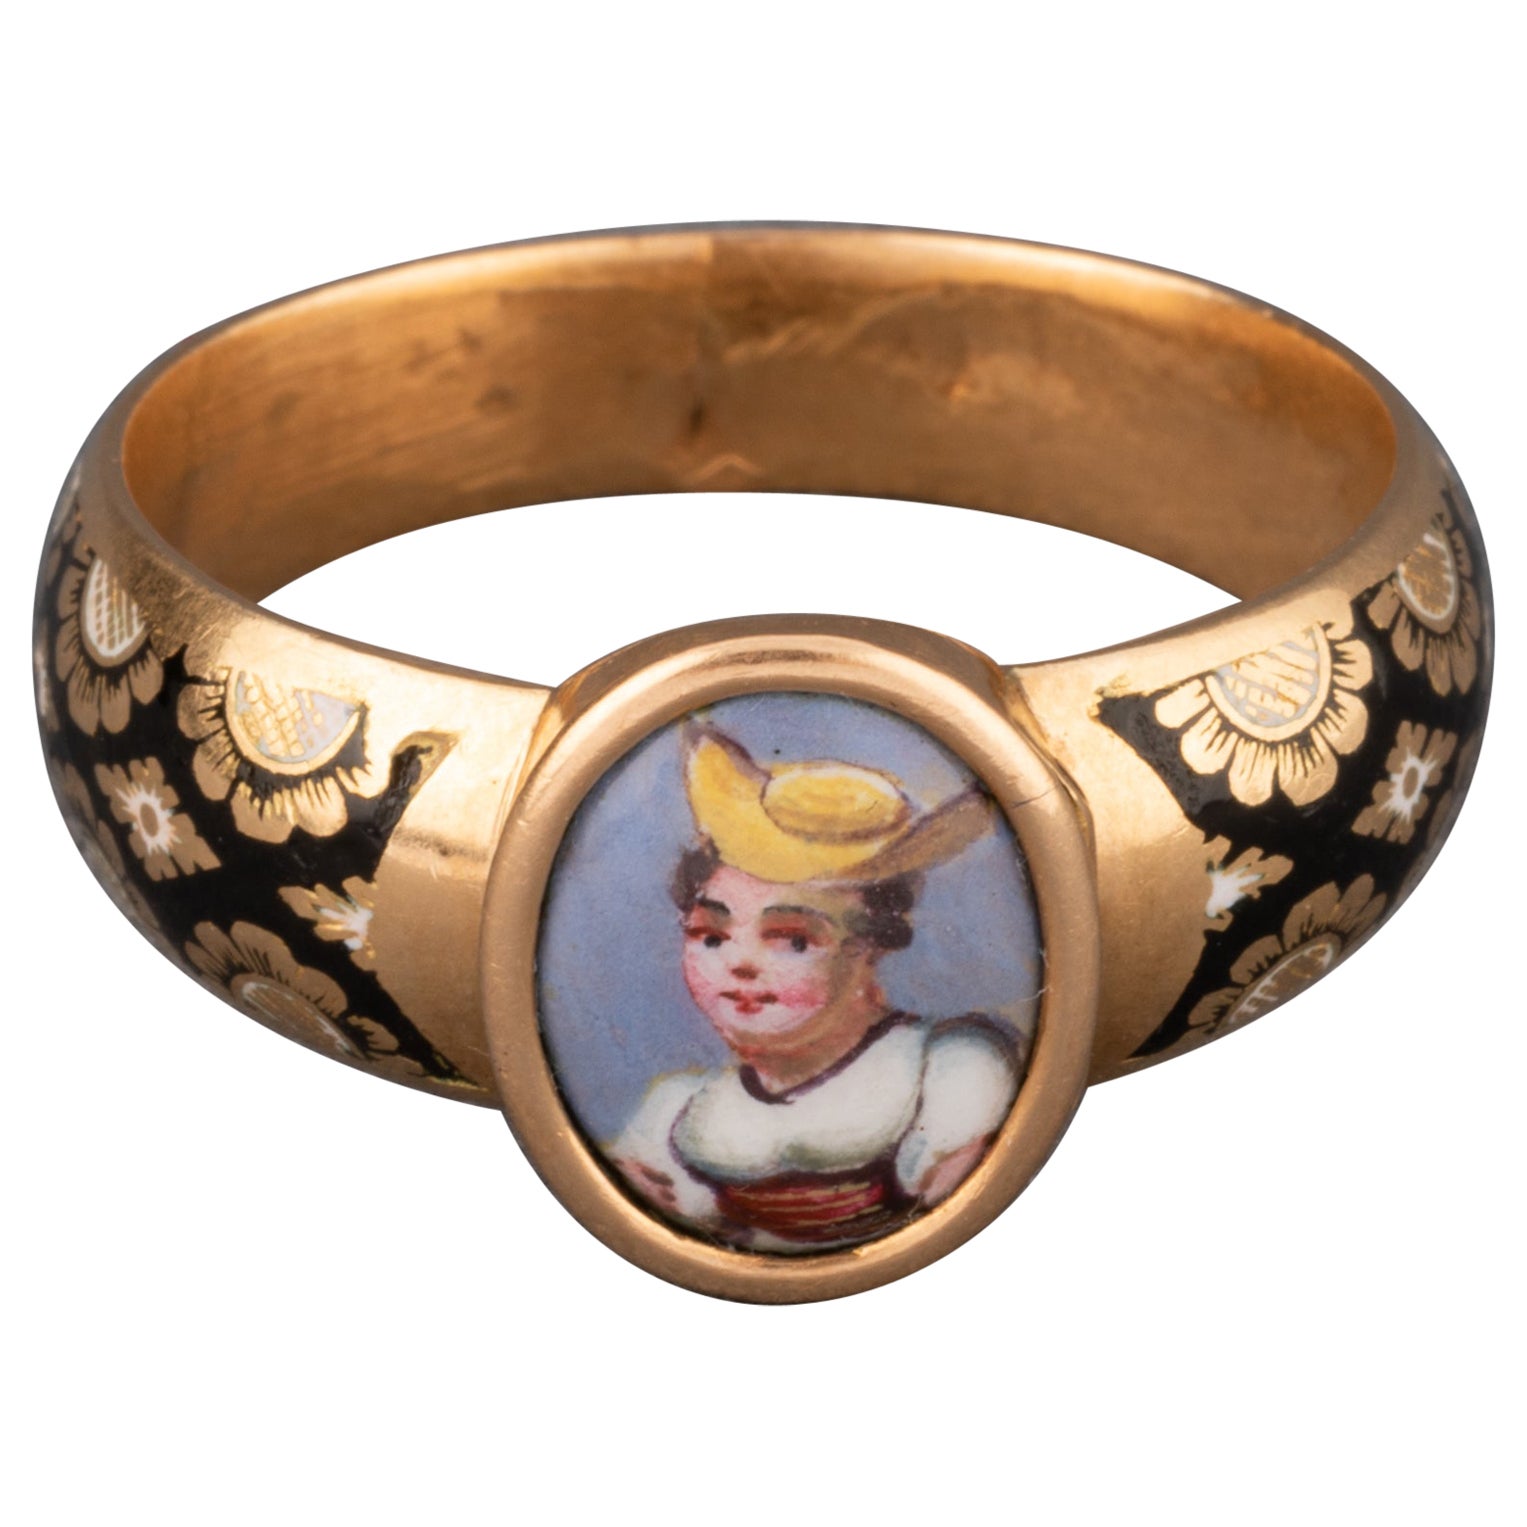 Antique Gold and Enamel Secret Ring